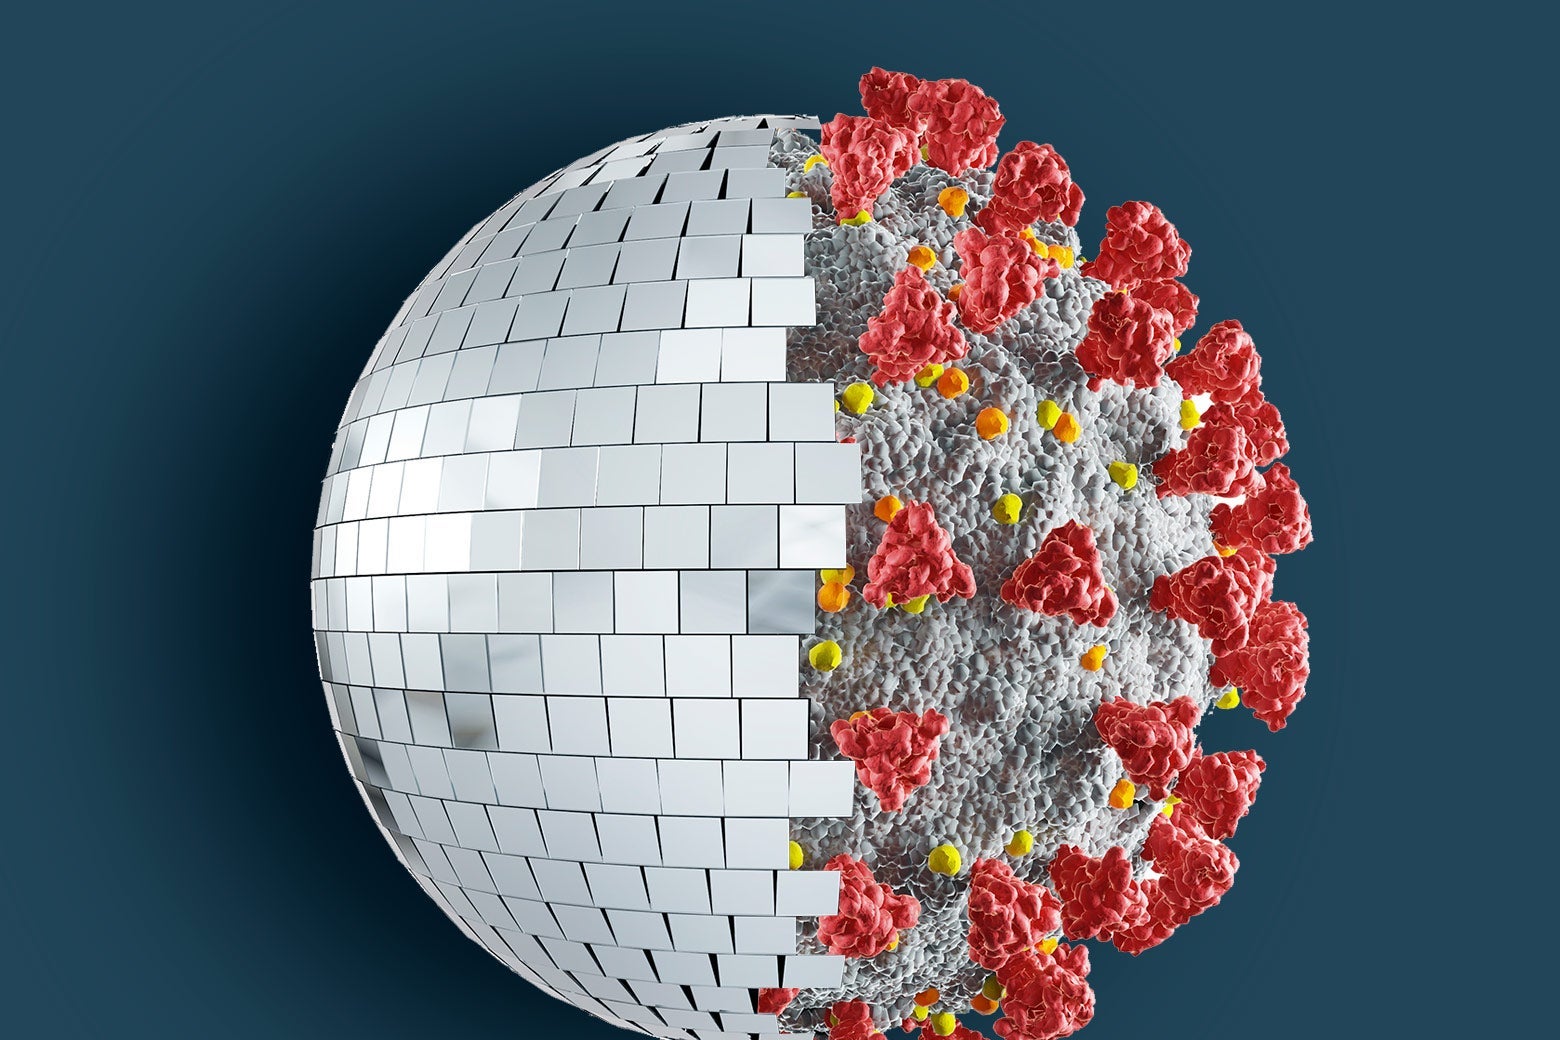 A sphere that is half a disco ball, half a novel coronavirus